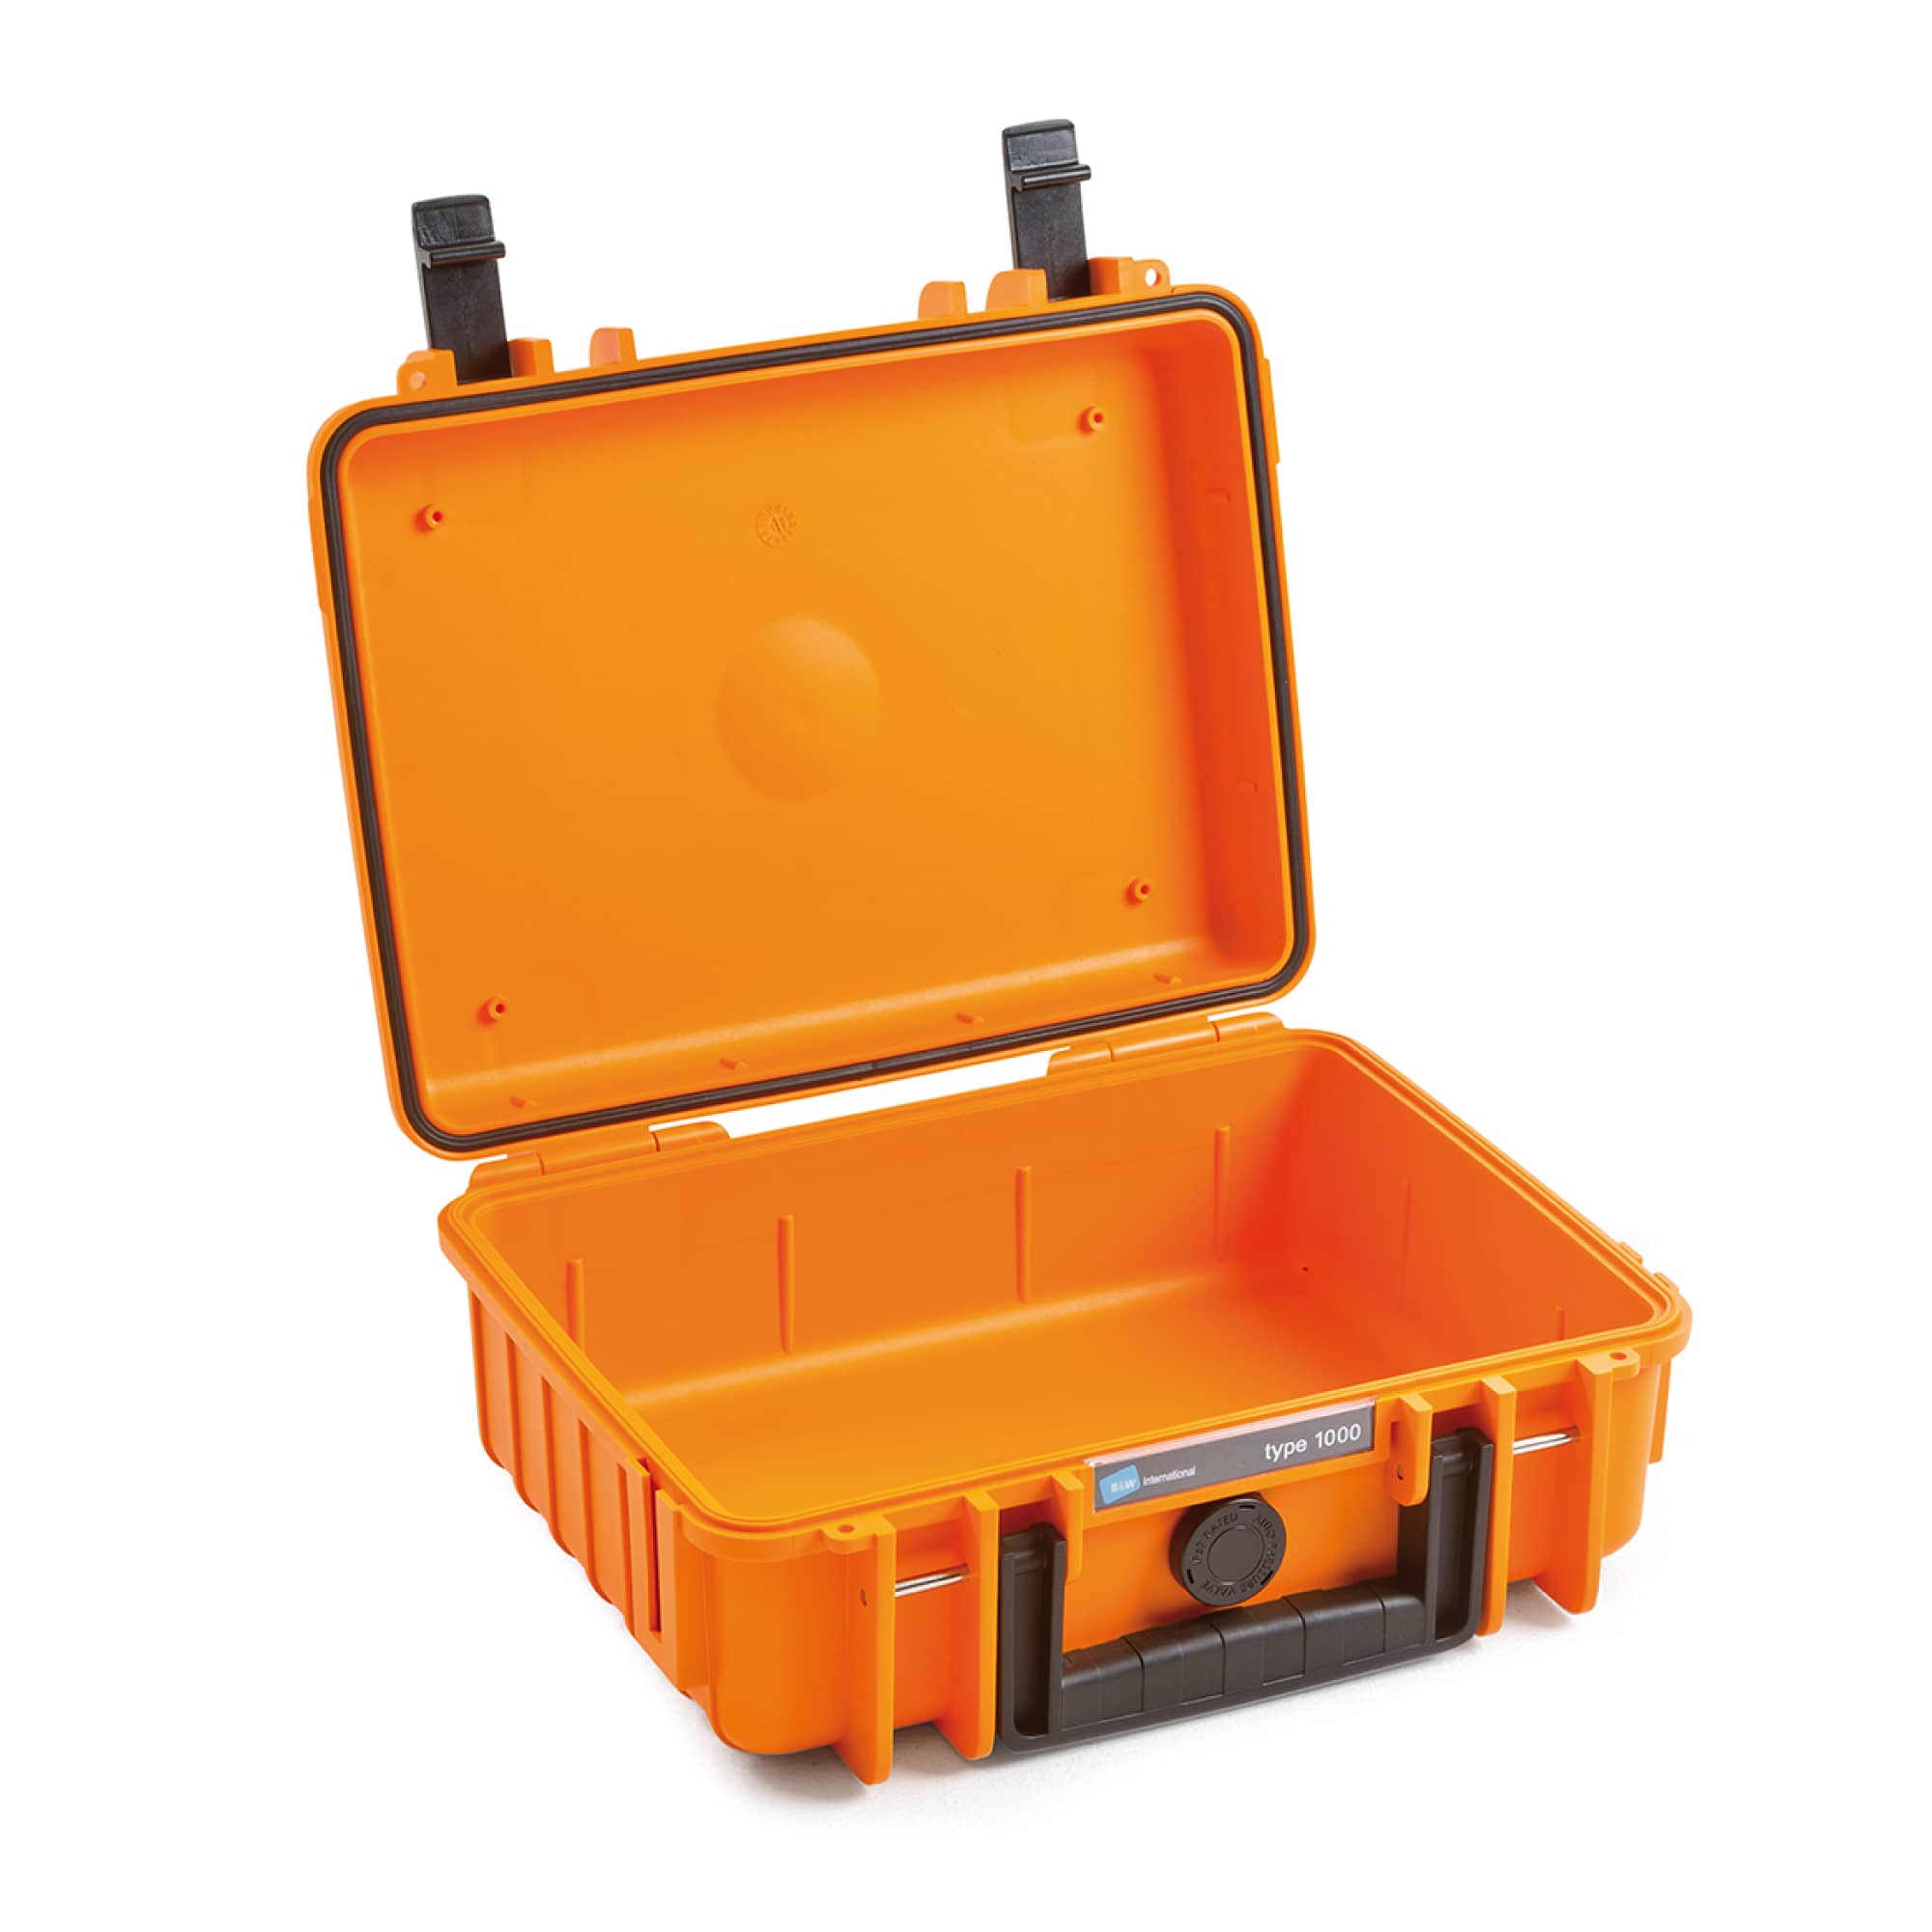 B&W Outdoor Case Typ 1000 Farbe: orange / Innenausstattung: leer